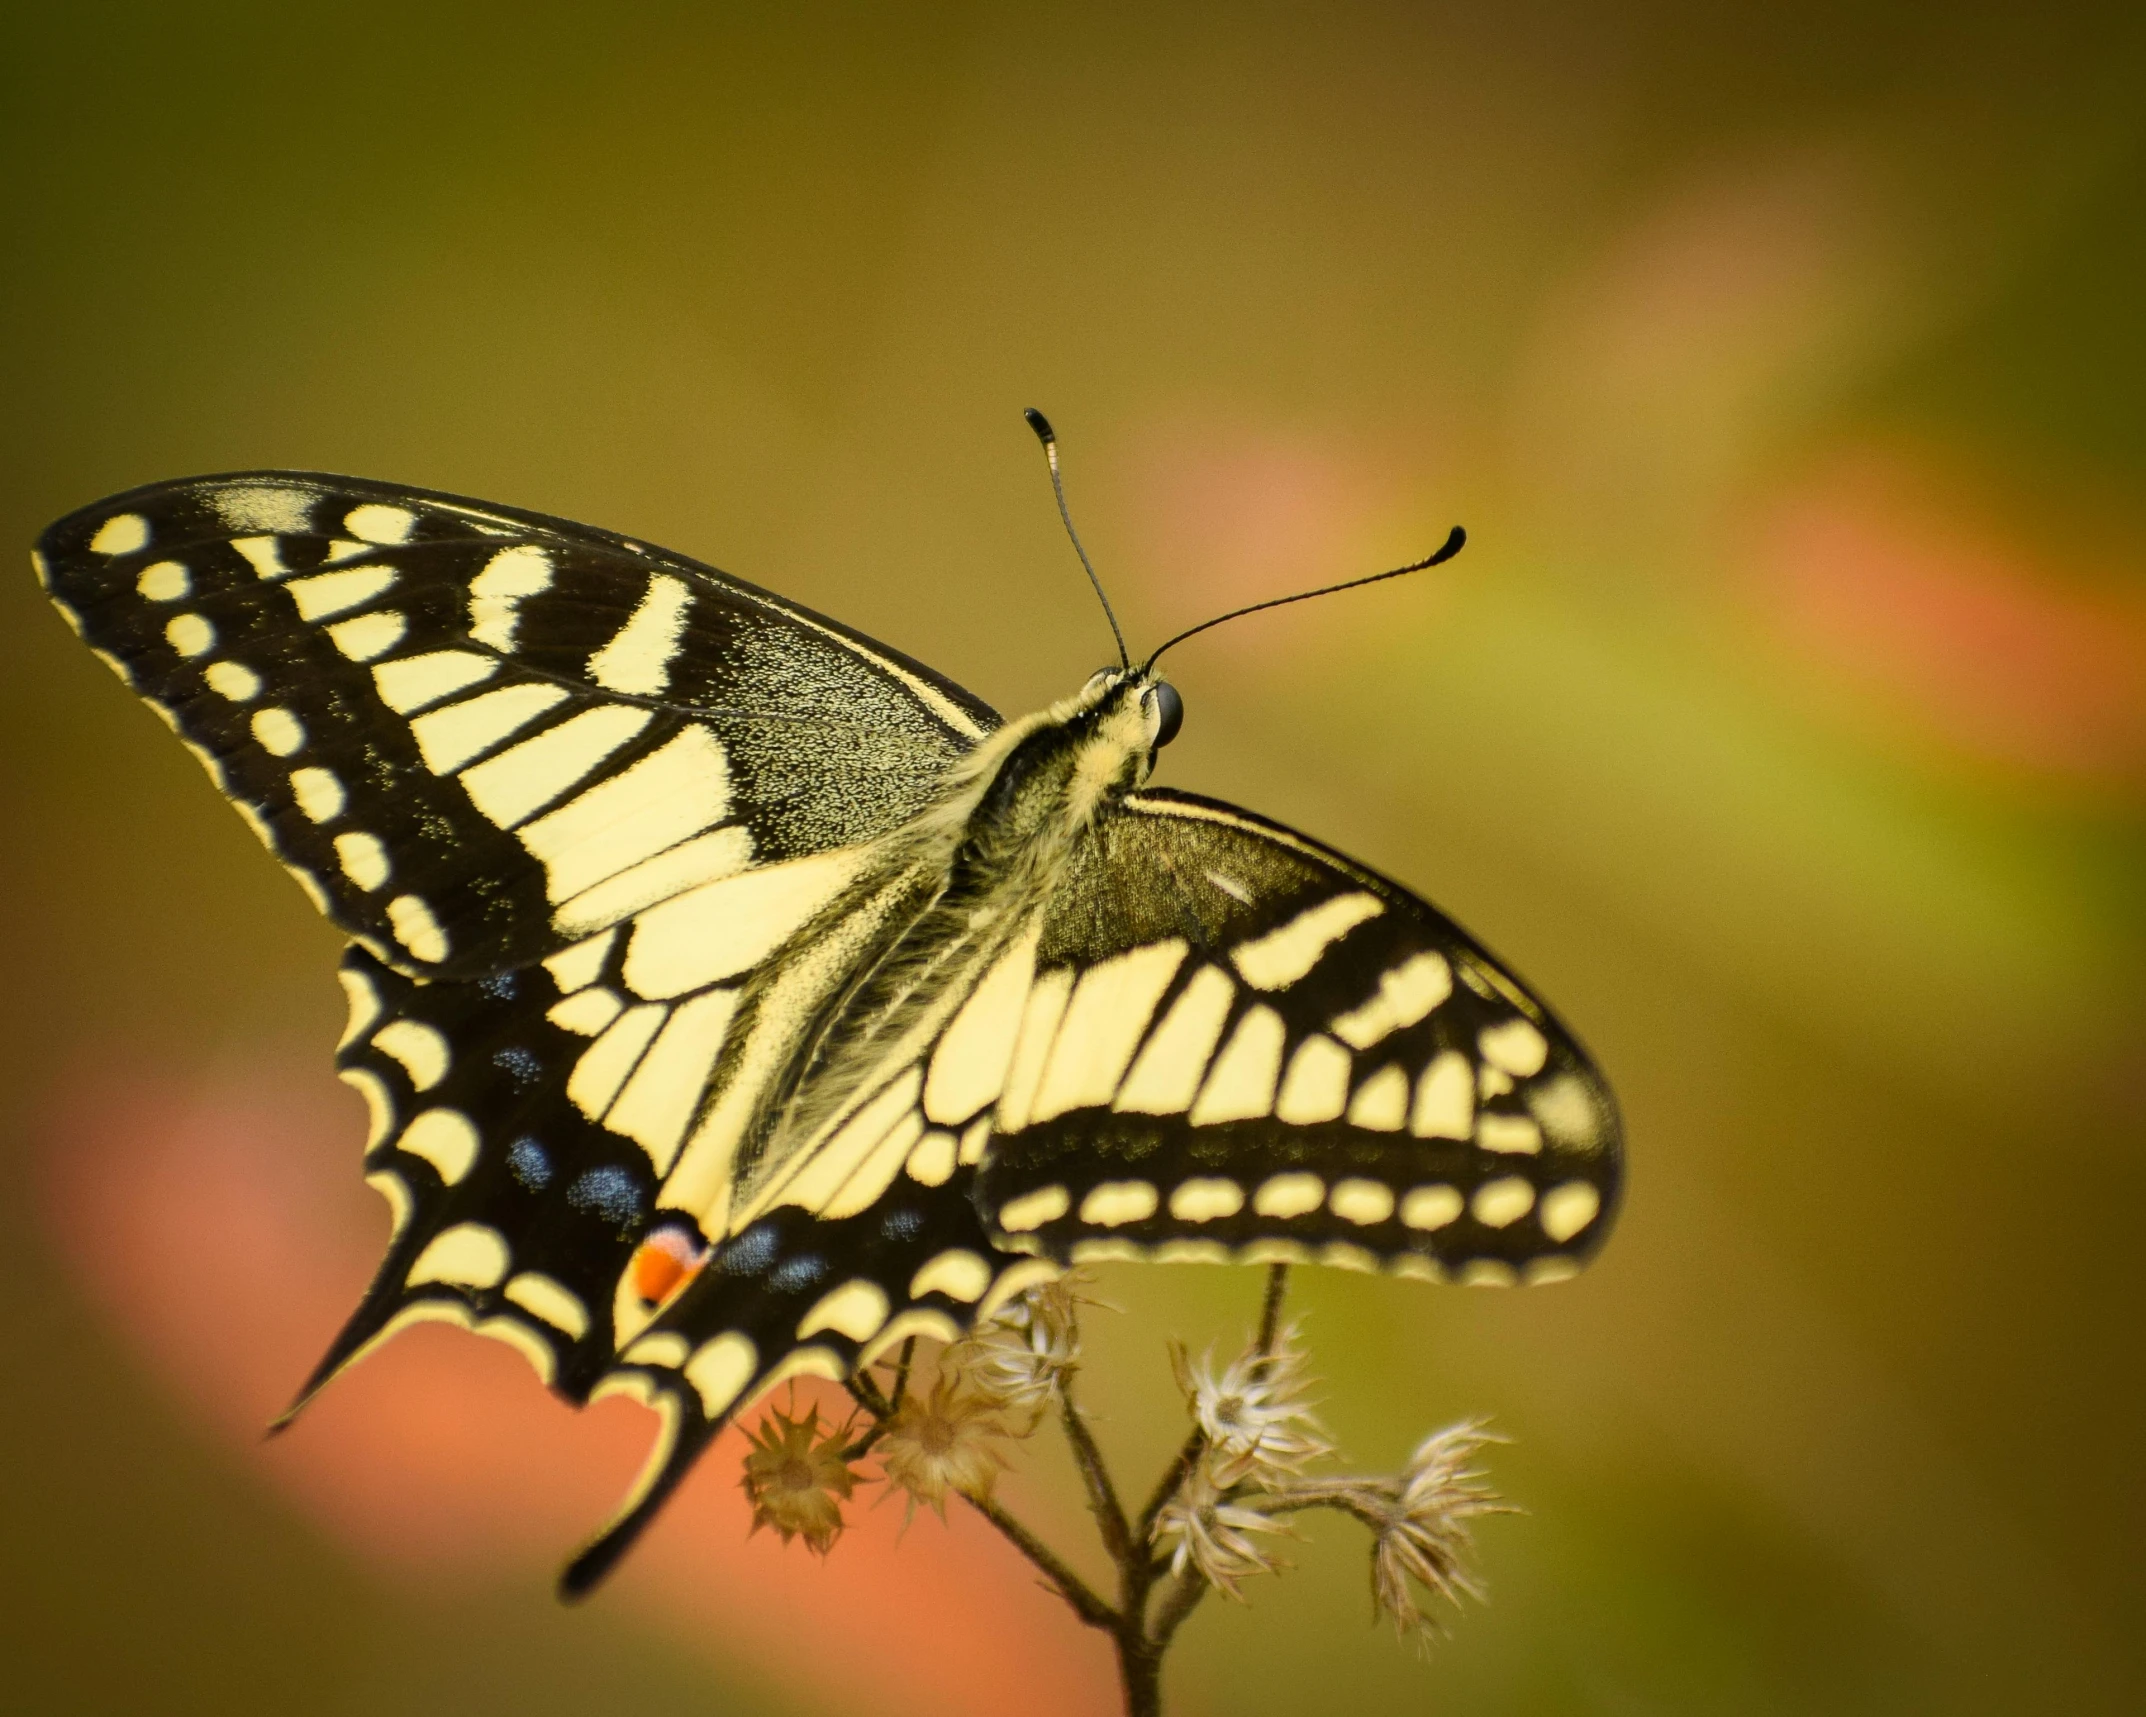 a close up of a butterfly on a flower, pexels contest winner, swallowtail butterflies, stretch, instagram post, soft golden light